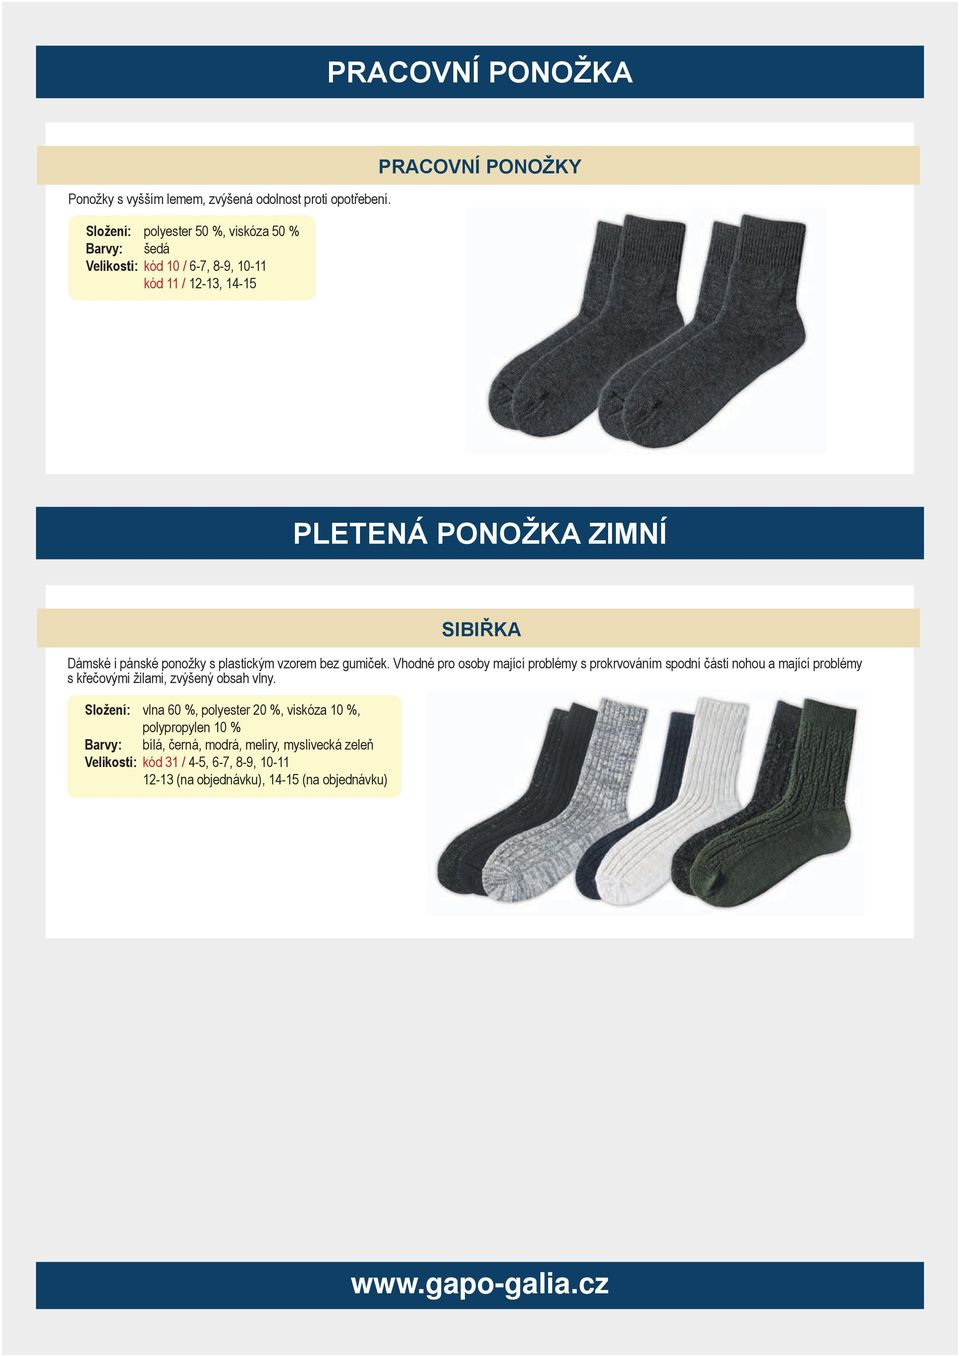 Dámské i pánské ponožky s plastickým vzorem bez gumiček.